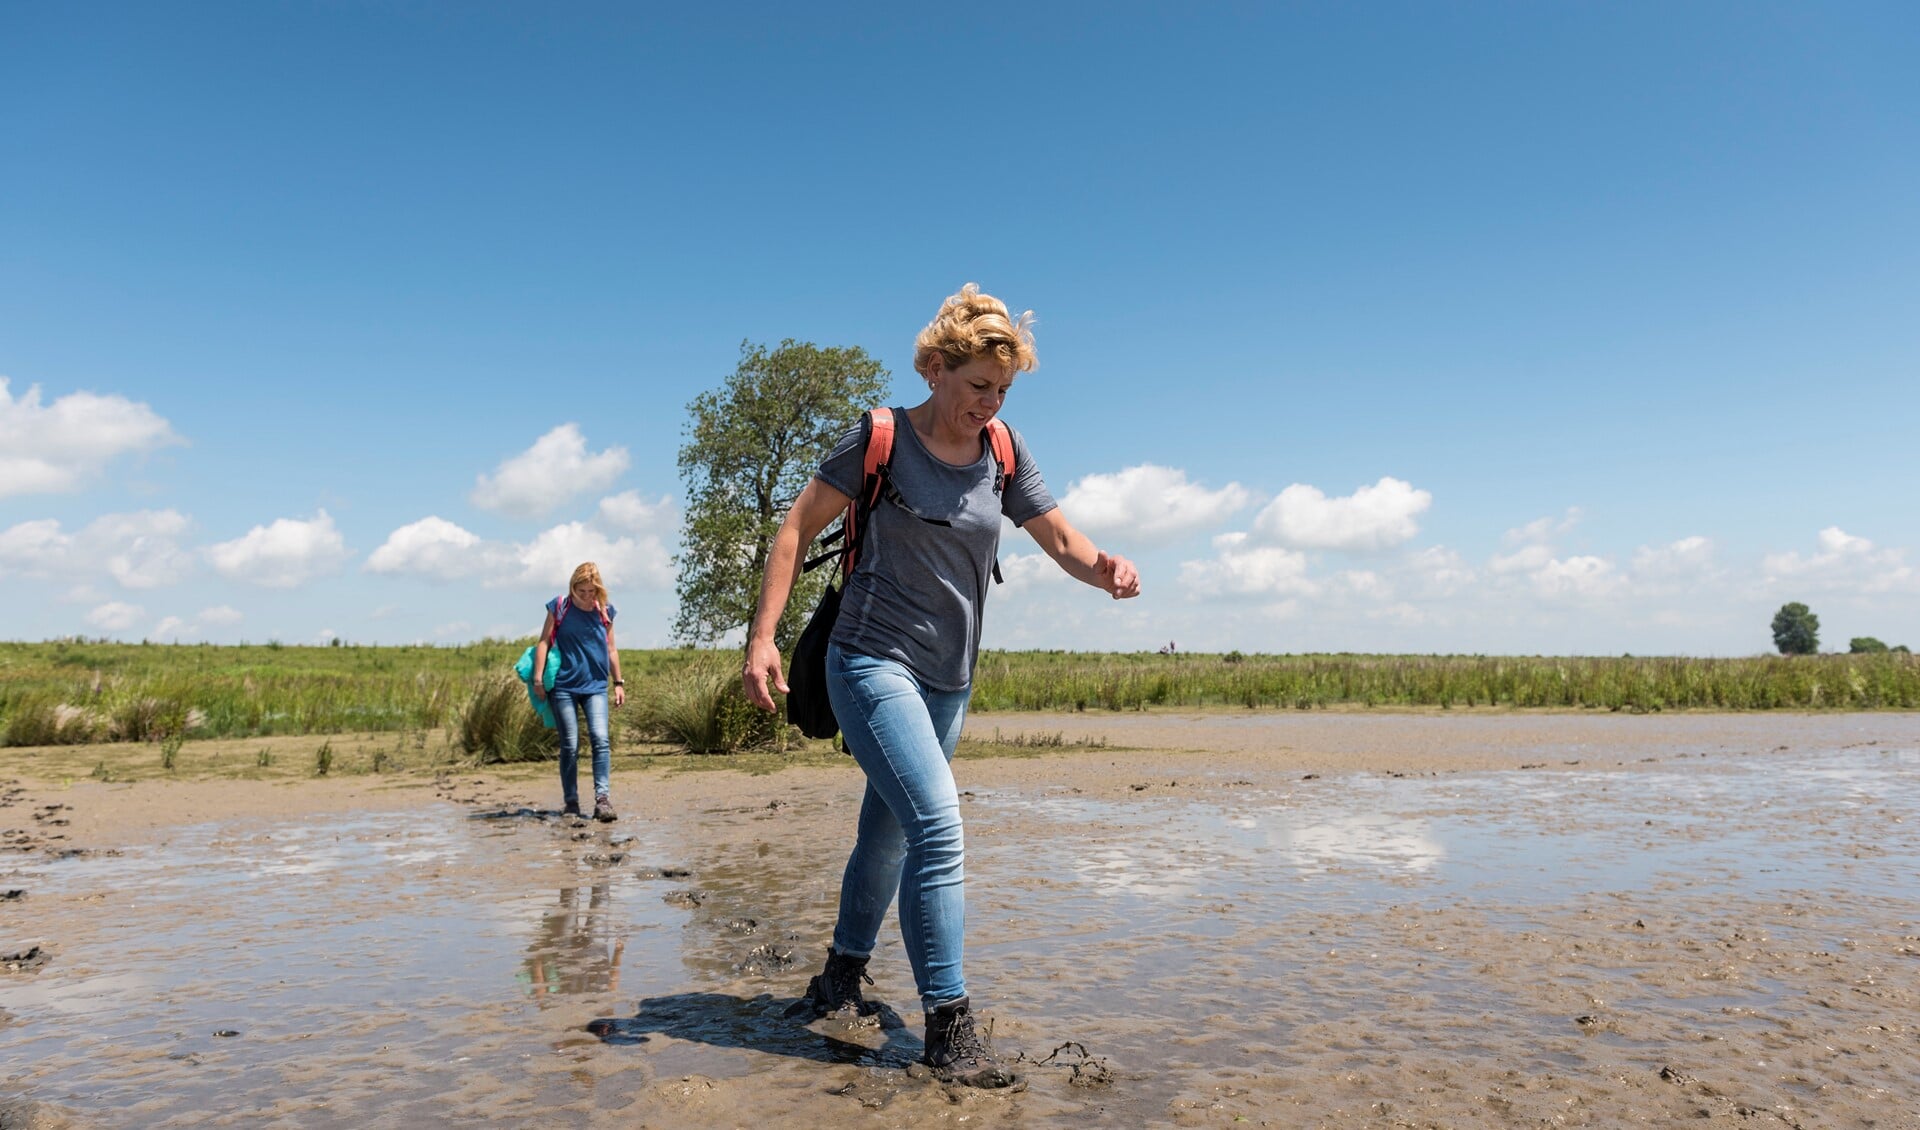 De struintocht voert door de Wildernis: het minst toegankelijke gebied van het eiland met slikken en moerassen. 